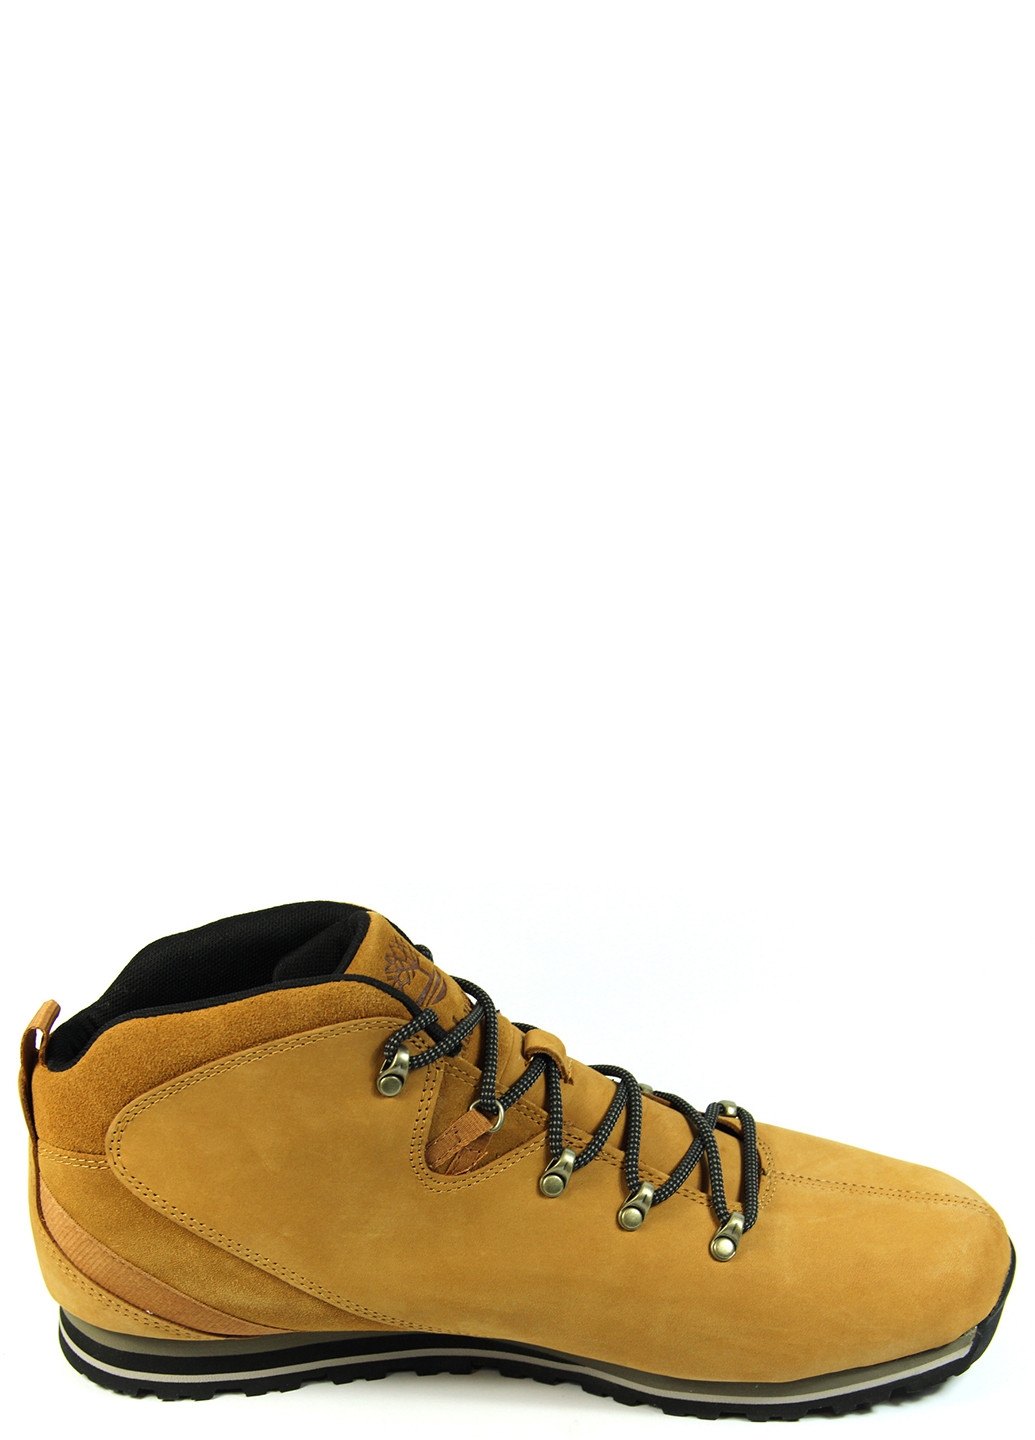 Коричневые осенние мужские ботинки splitrock 3 a28n2 Timberland